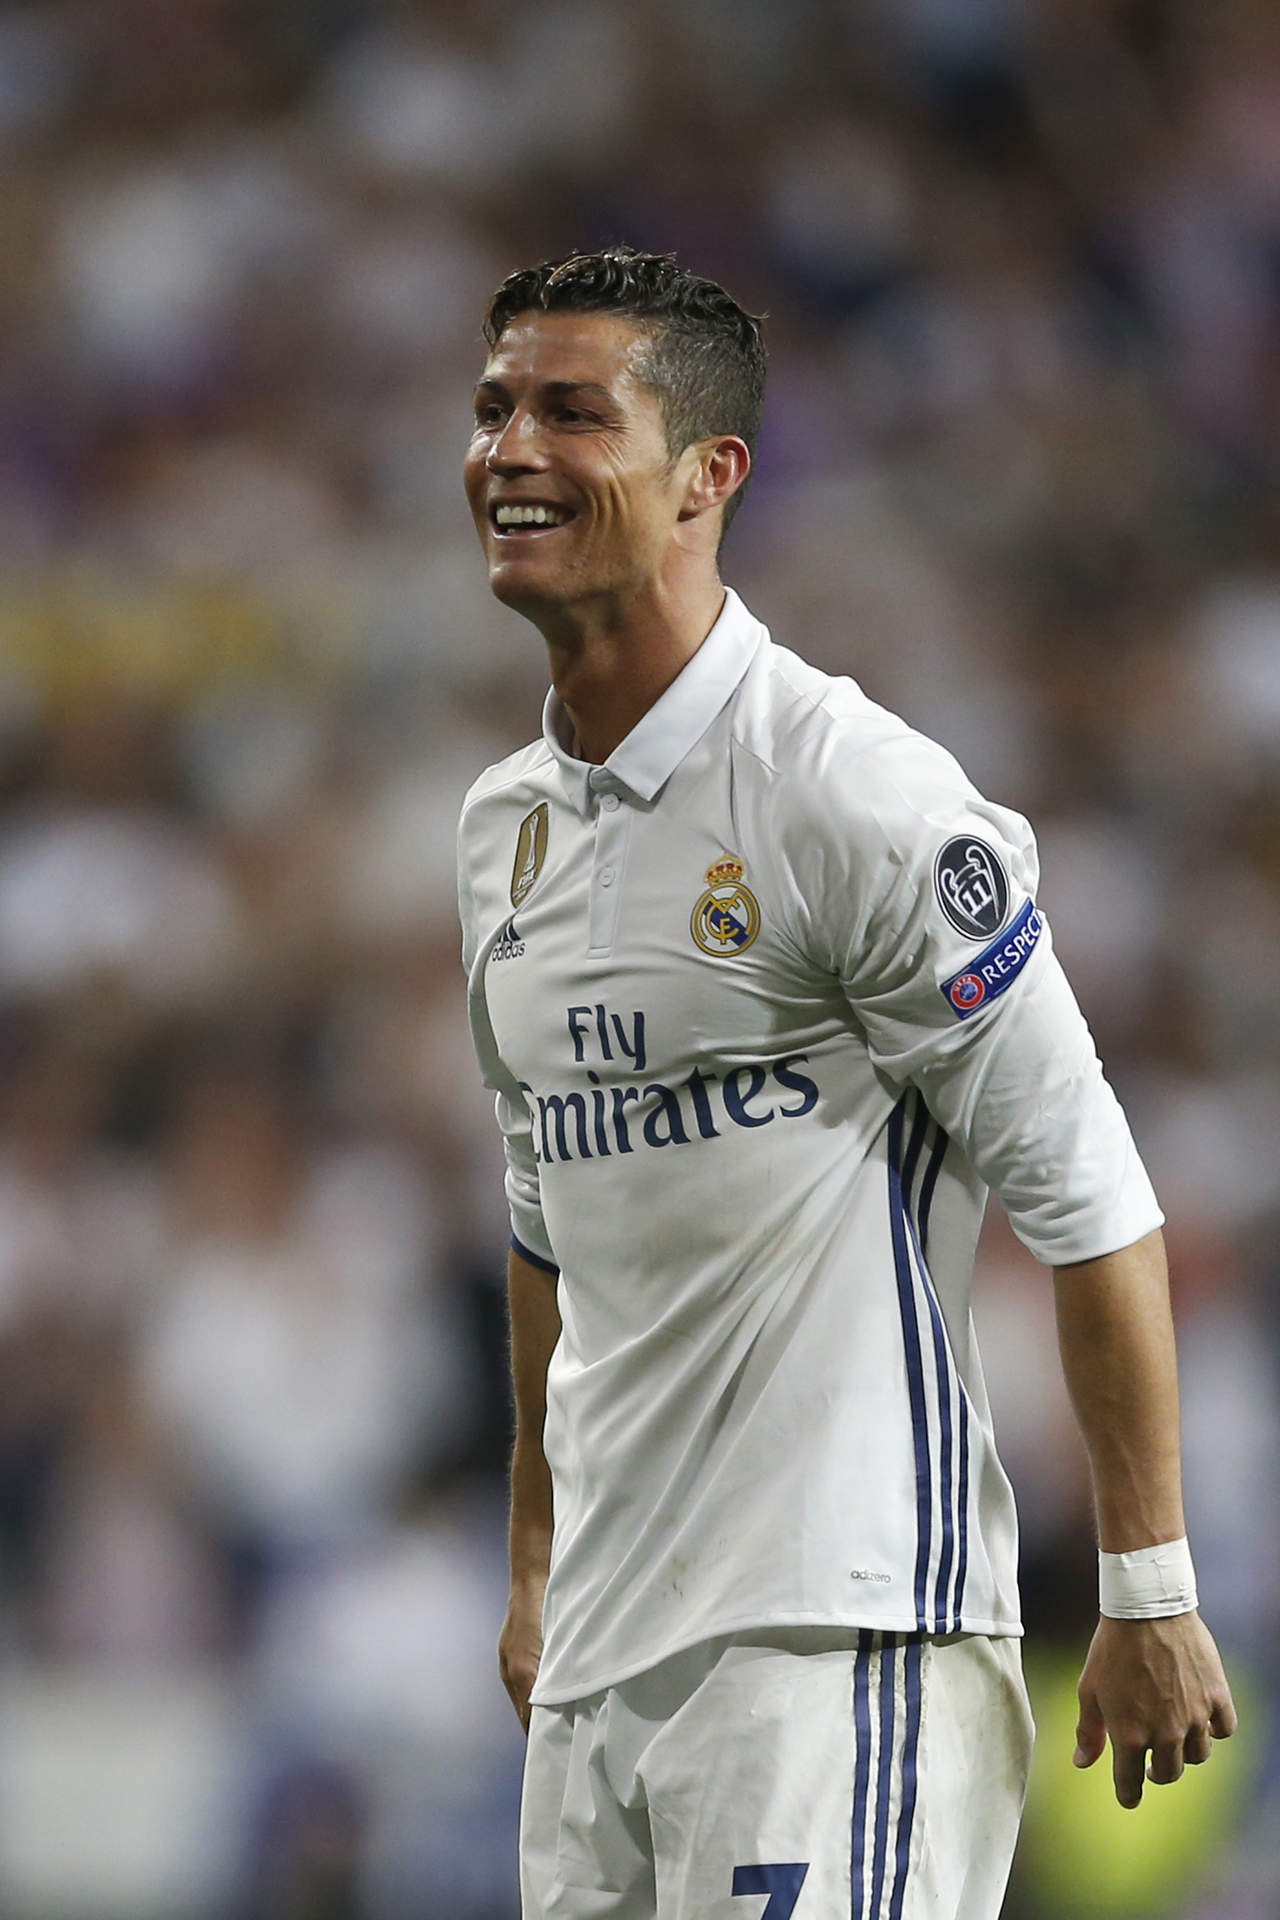 Involucran a Cristiano Ronaldo en presunta violación